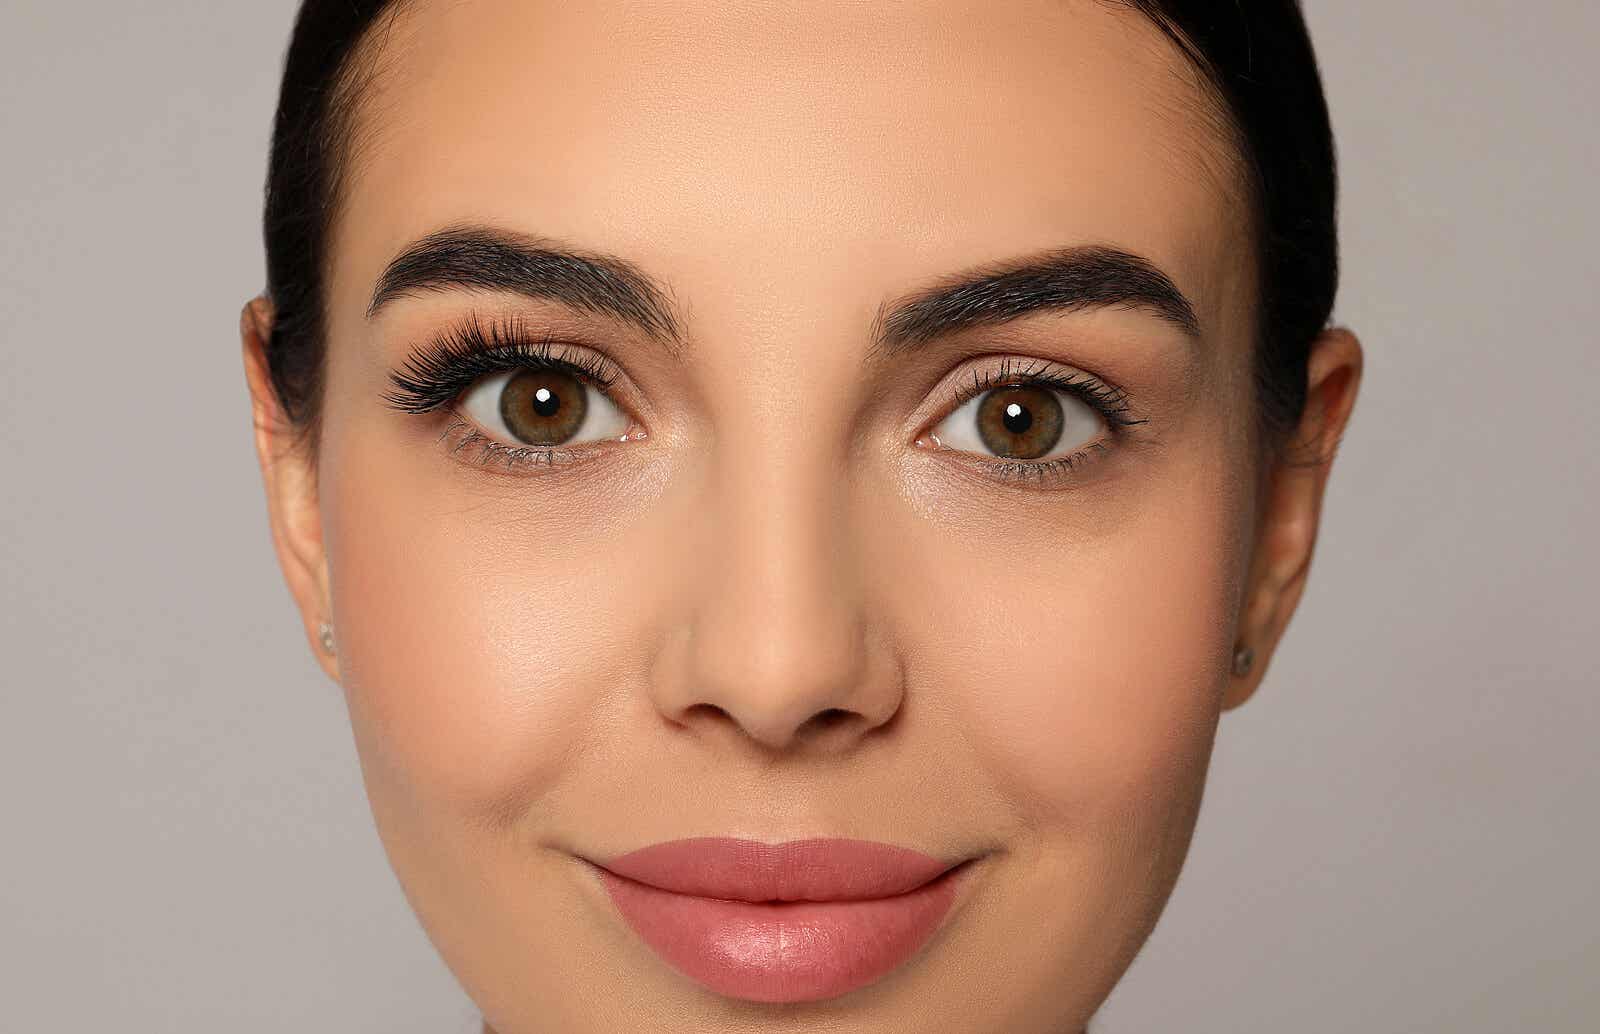 Niewłaściwe techniki, jeśli chodzi o makijaż, mogą naprawdę zrujnować Twój wygląd